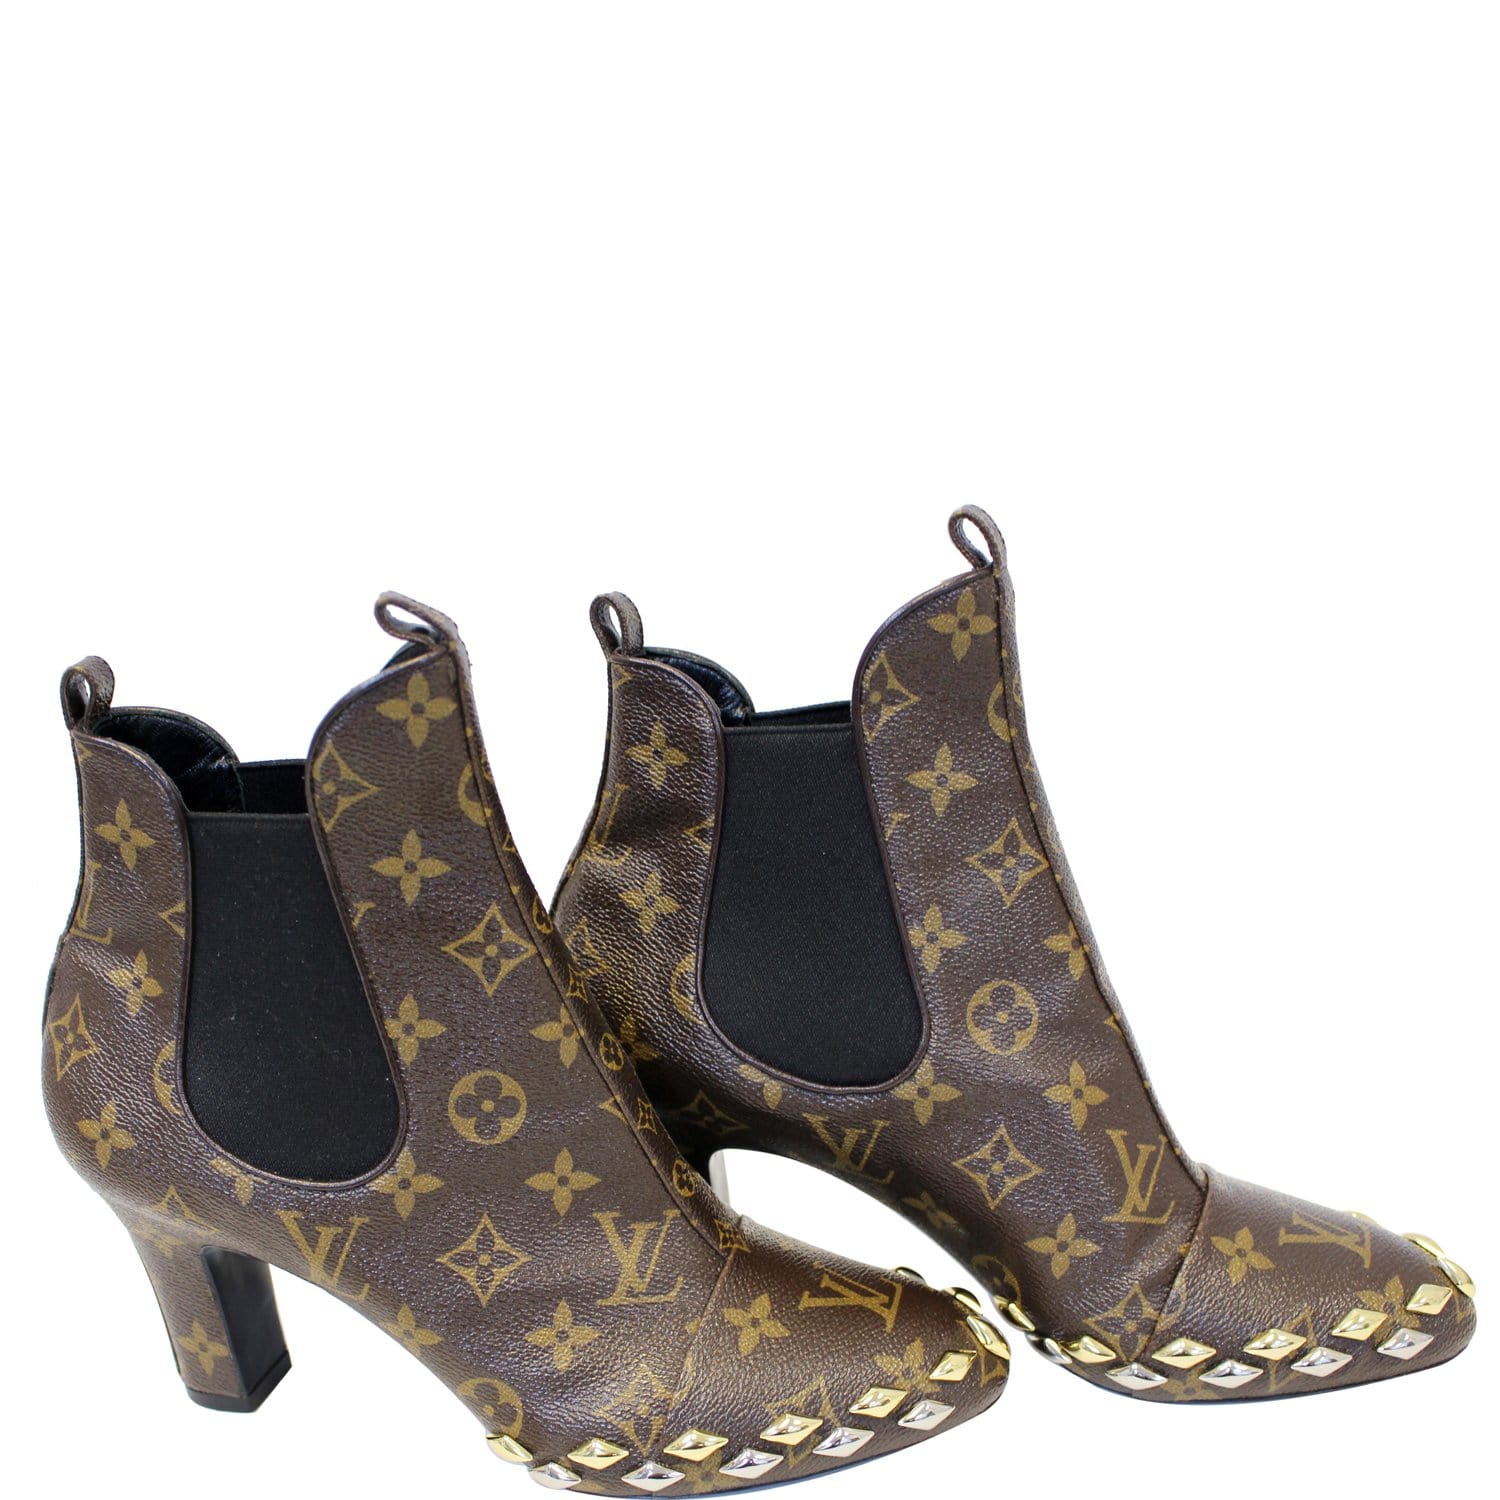 Louis Vuitton Canvas Boots